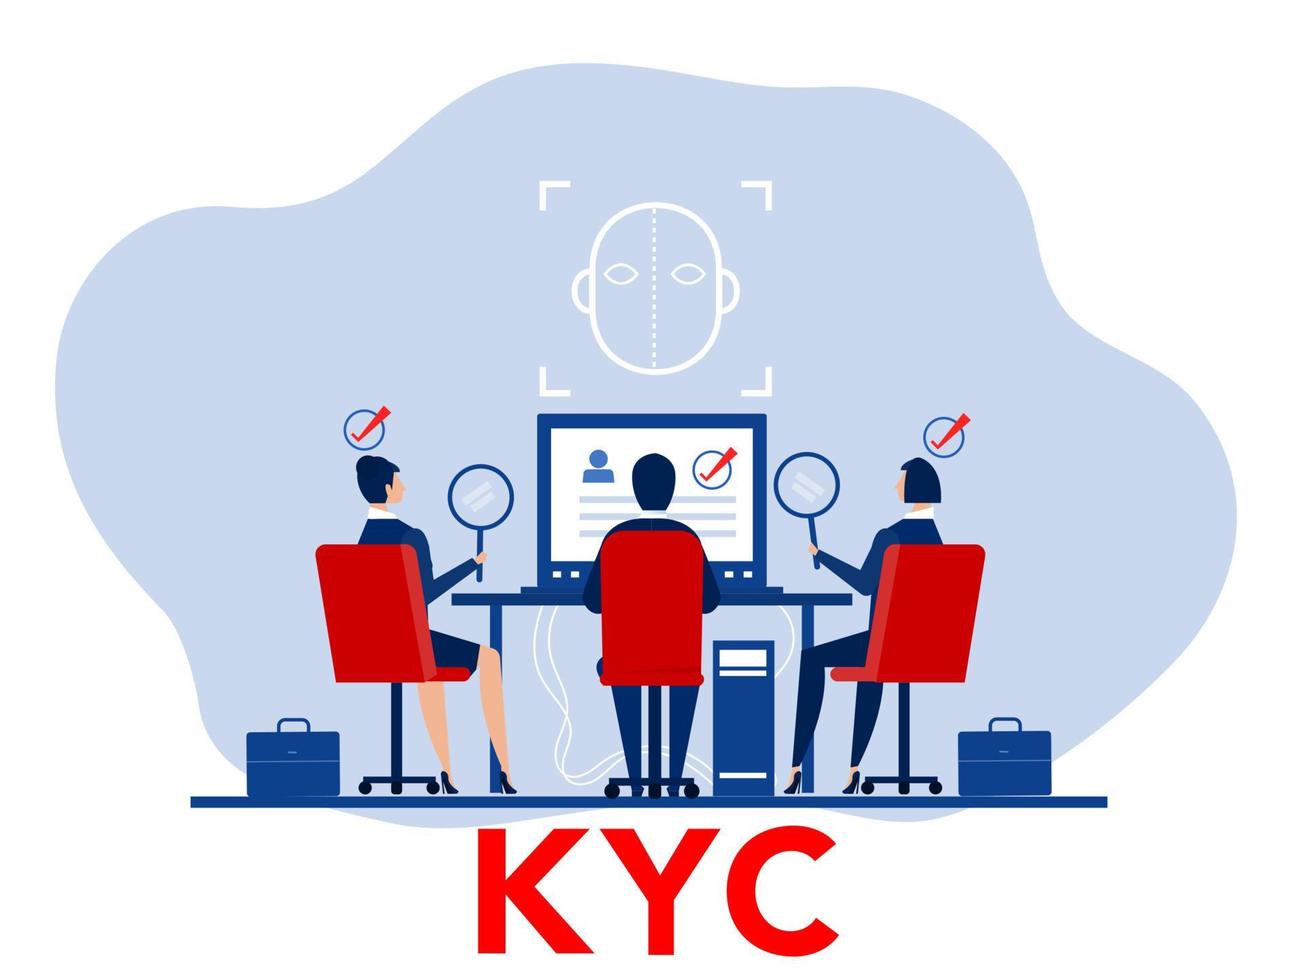 kyc ou connaissez votre client avec entreprise vérifiant l'identité de son concept de clients chez les futurs partenaires grâce à un illustrateur de vecteur en forme de loupe